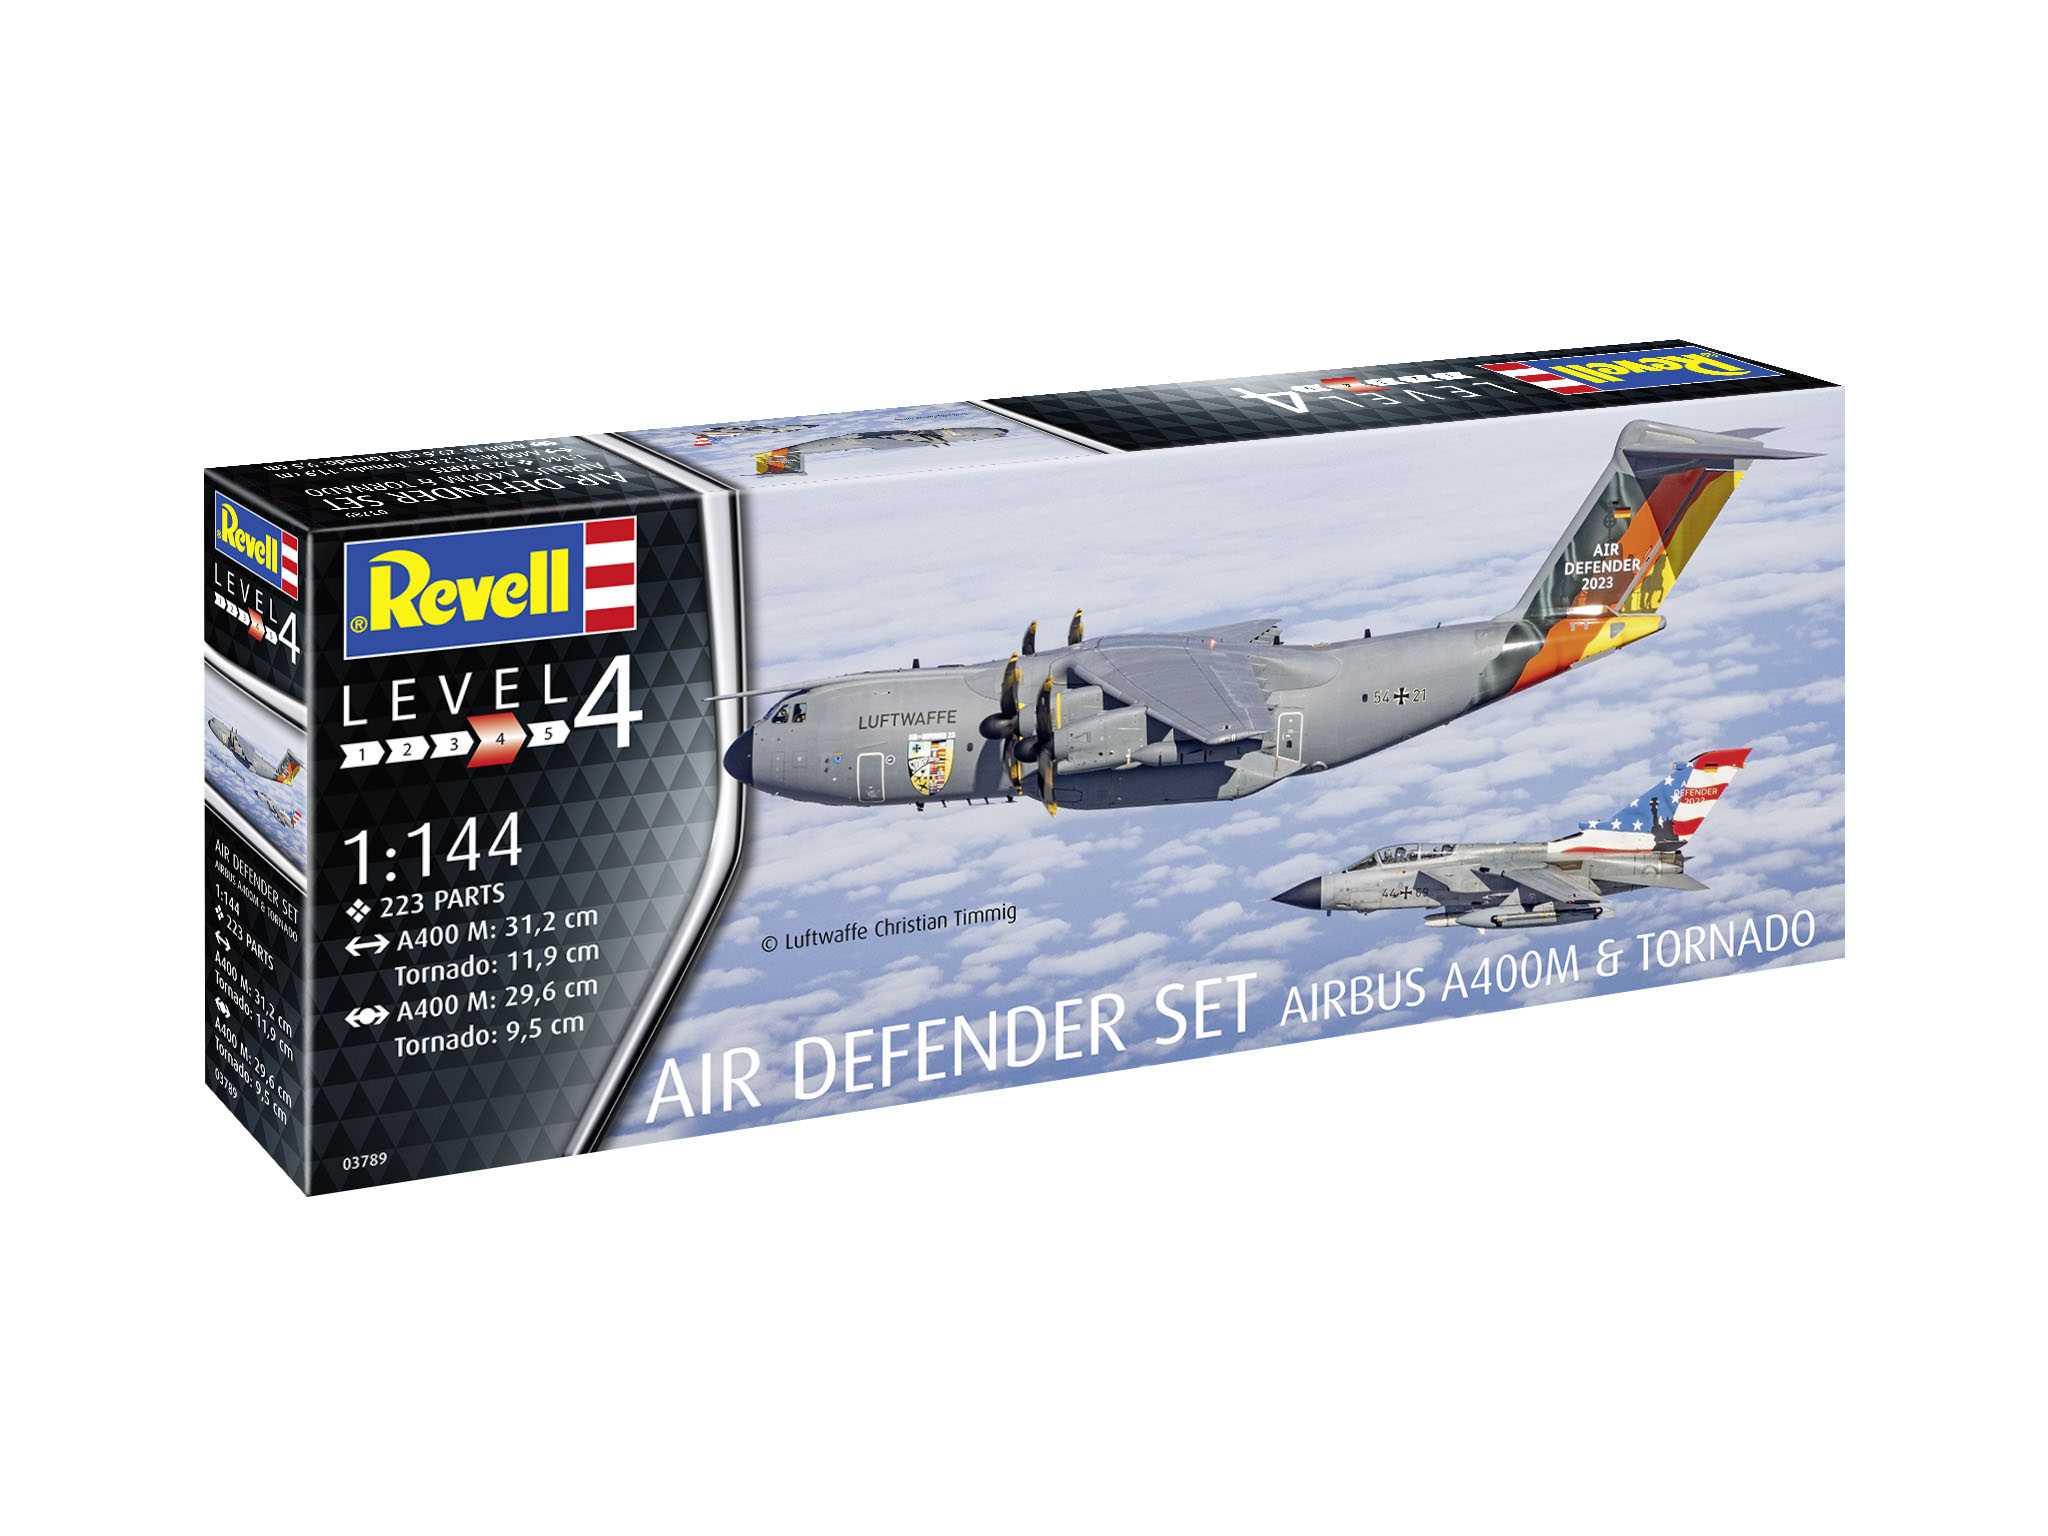 Revell Plastic ModelKit letadla 03789 - Air Defender (1:144)